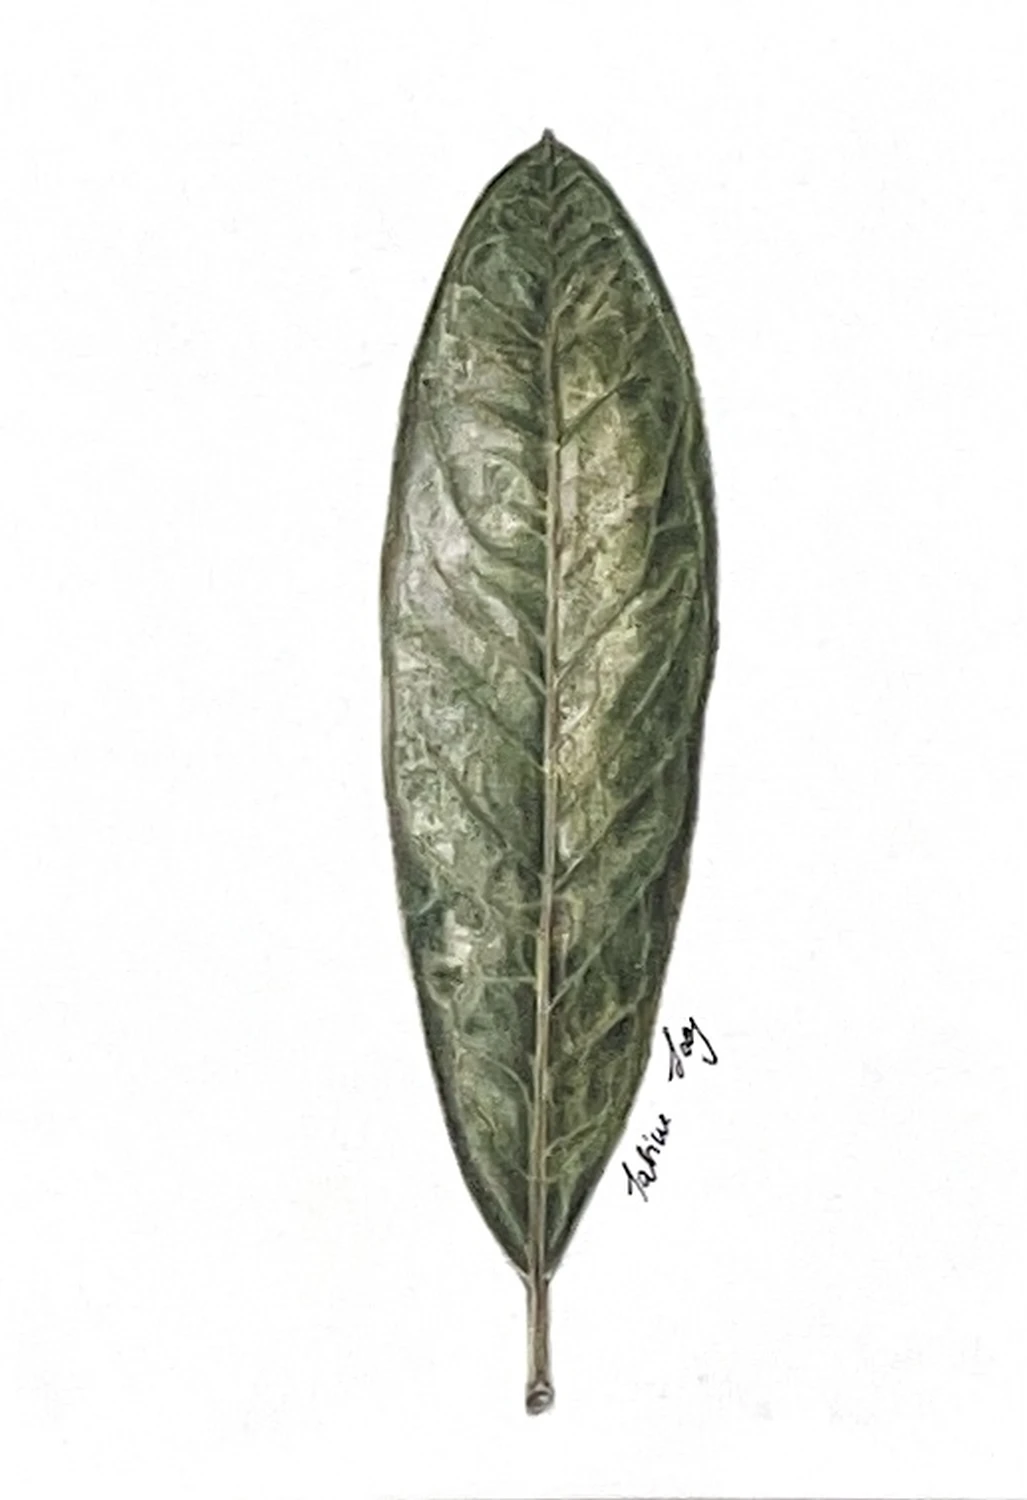 Rhododendronspec. Blatt (Ericaceae) von Sabine Loos